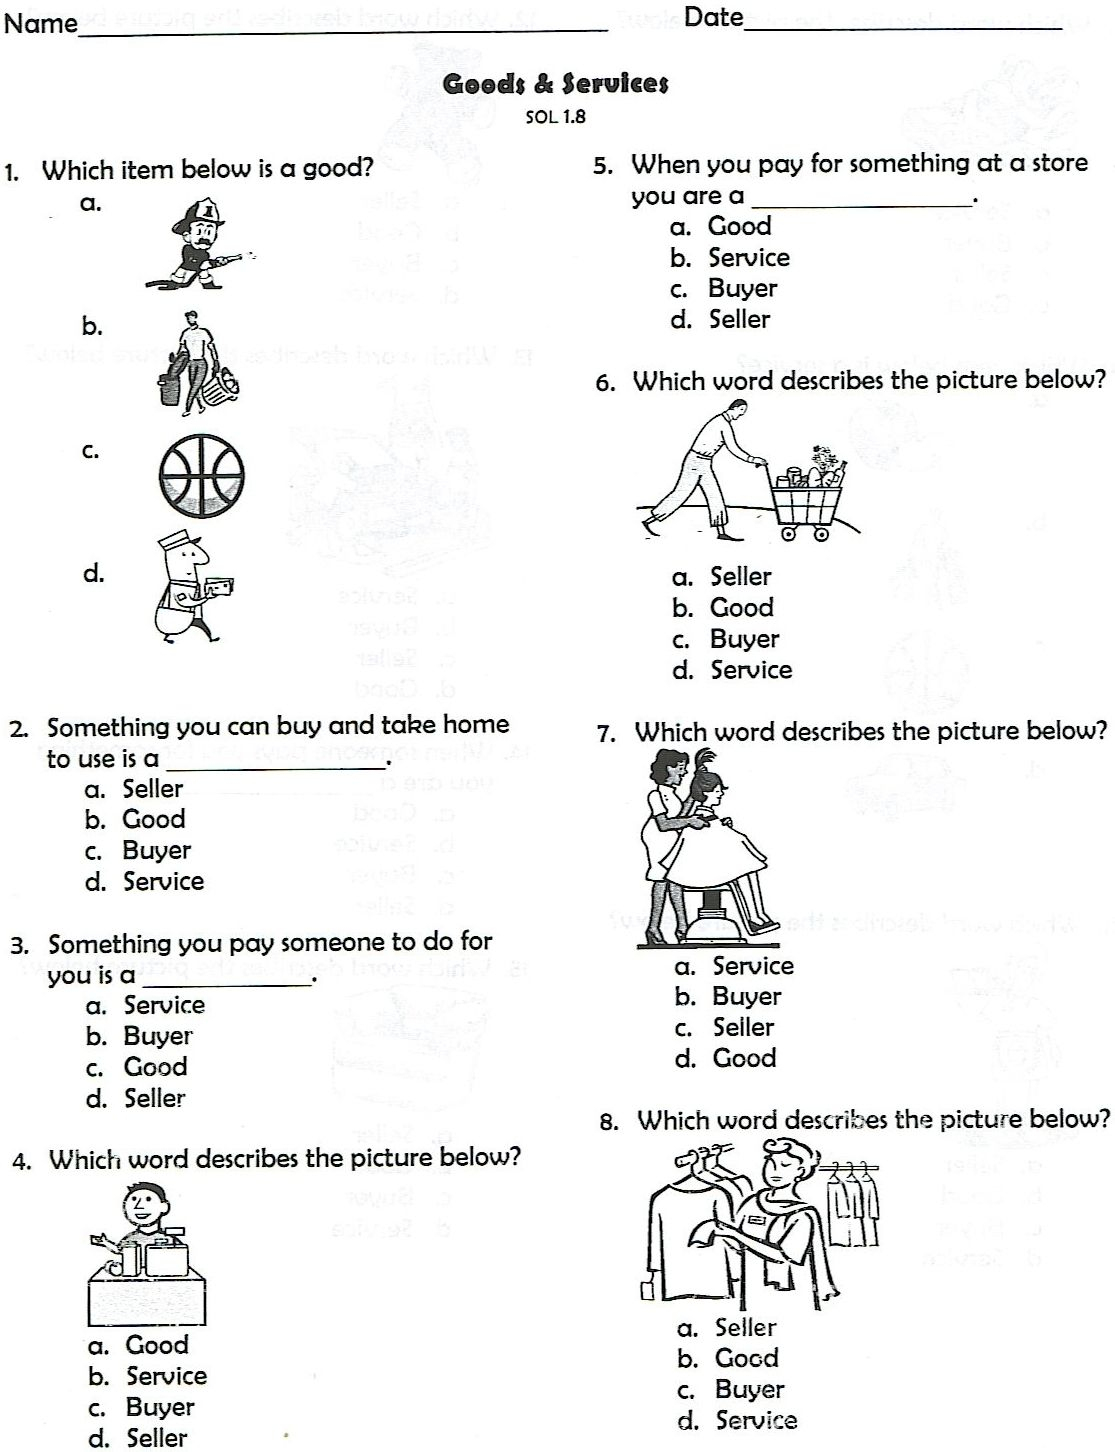 7Th Grade Social Studies Worksheets – Worksheet Template - Social Studies Worksheets First Grade Free Printable